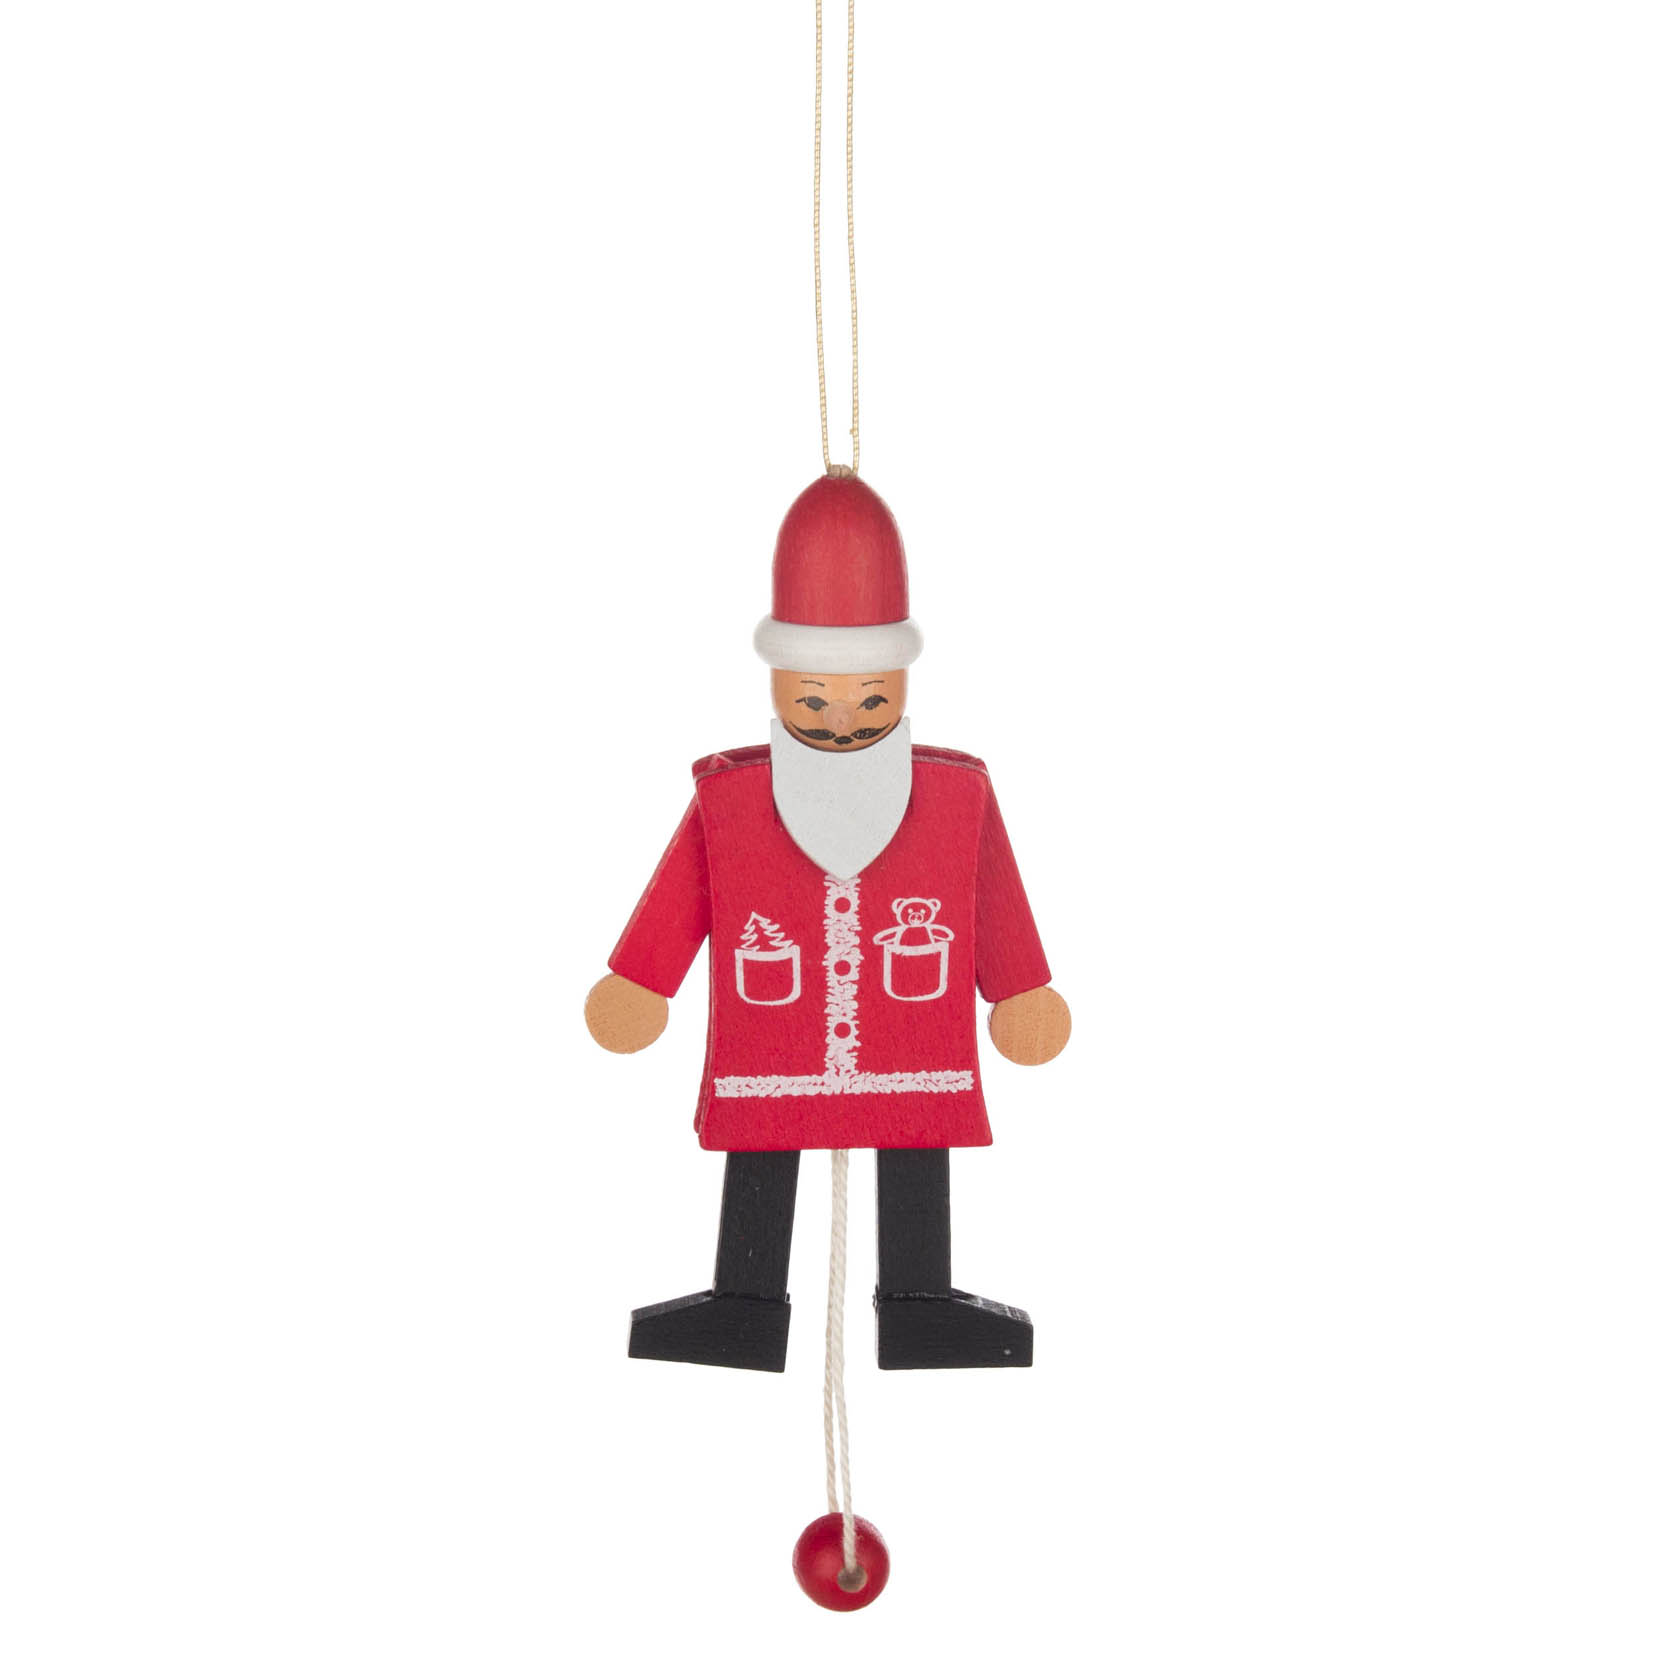 Behang Hampelmann Weihnachtsmann funktionsfähig -dregeno exclusiv- im Dregeno Online Shop günstig kaufen